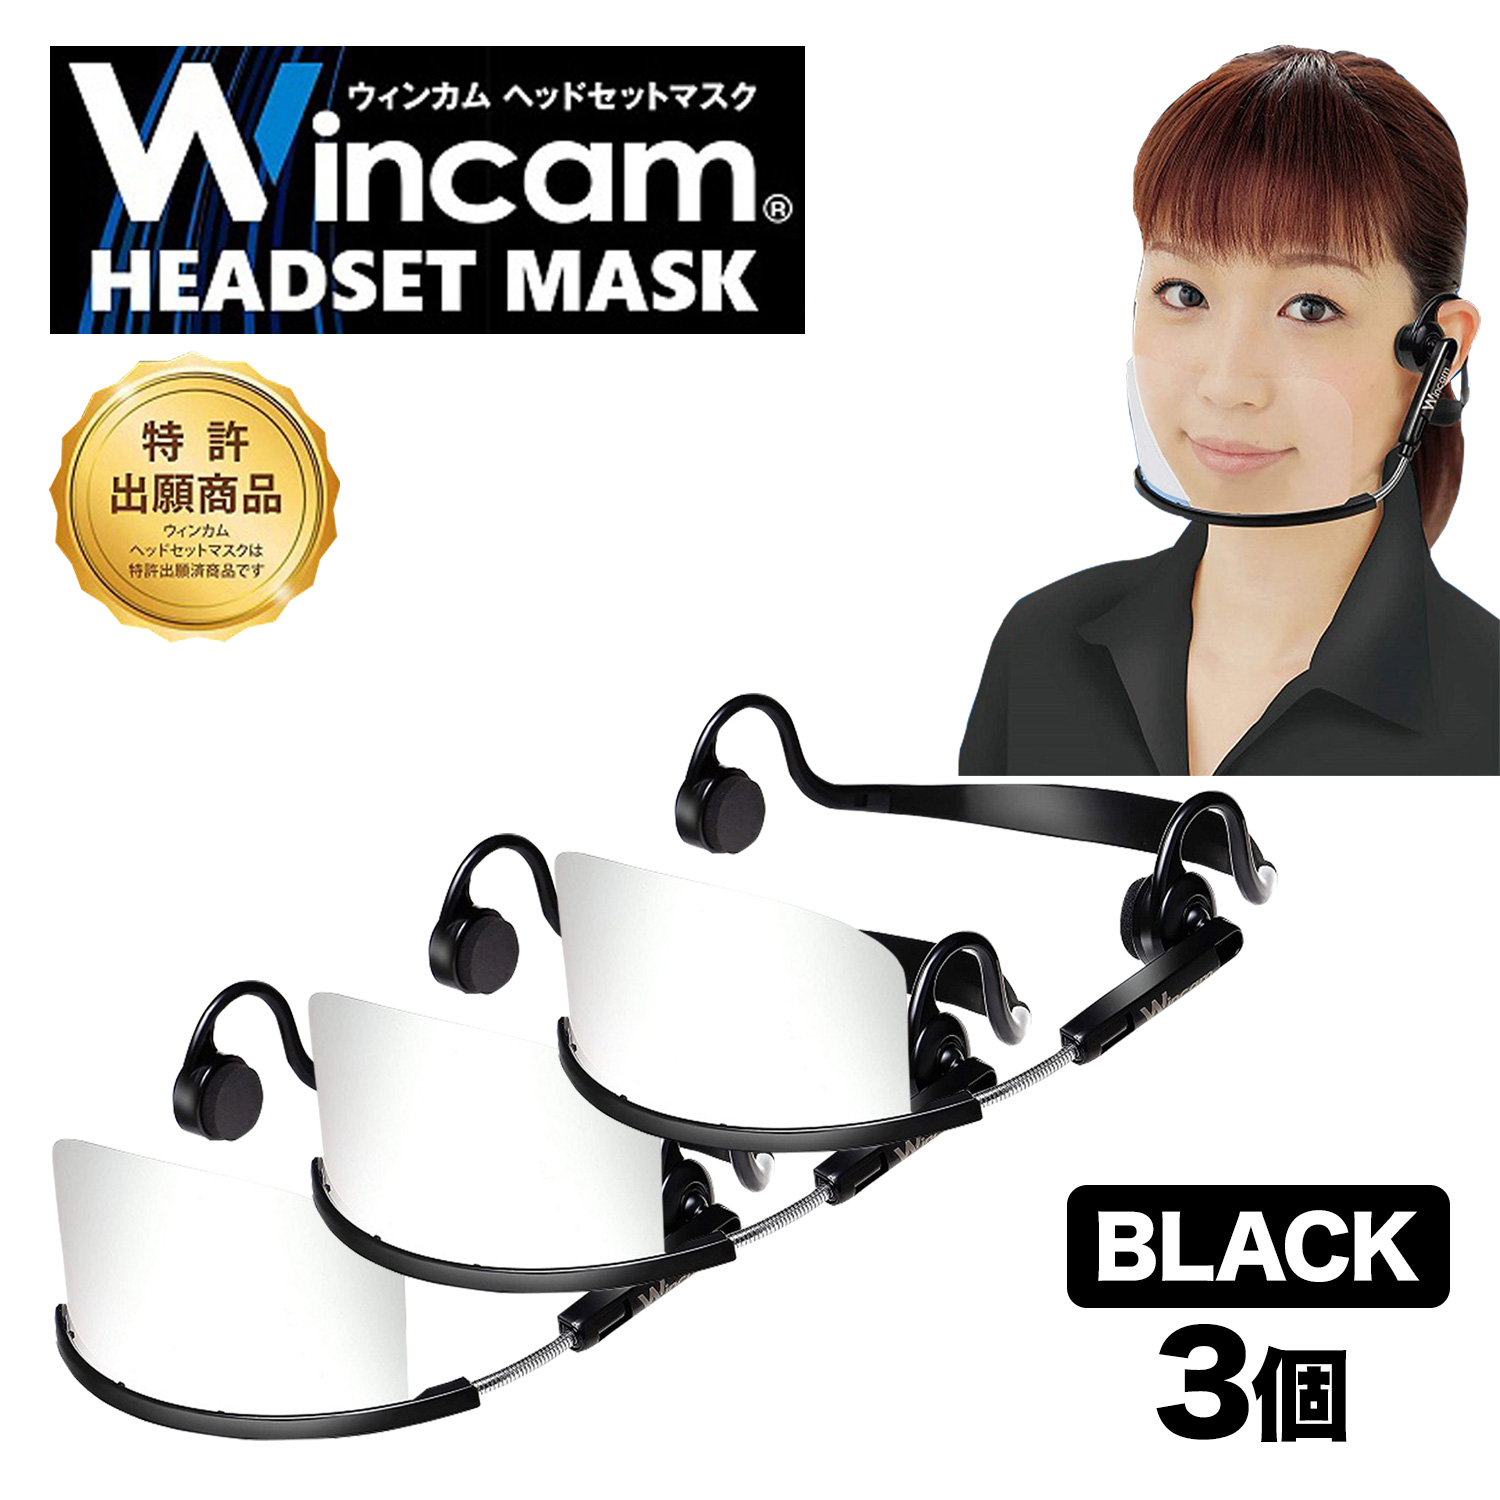 ウィンカム 透明衛生マスク/ヘッドセットマスク W-HSM-3B (sb)【メール便不可】　ブラック 3個セット ブラック